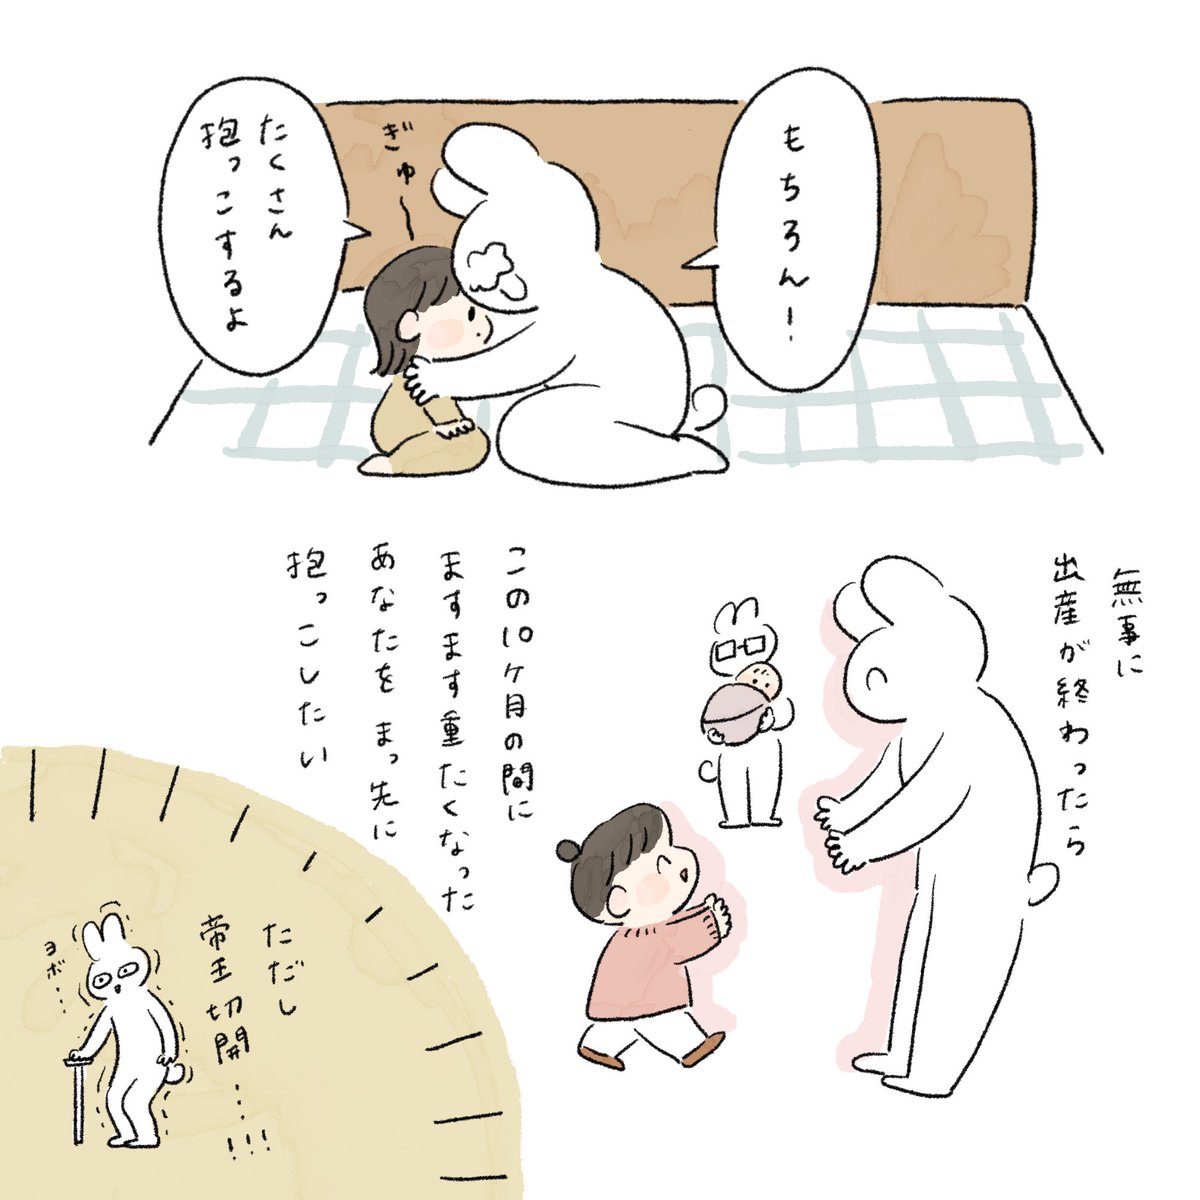 (2/2)
#育児絵日記 #育児漫画 